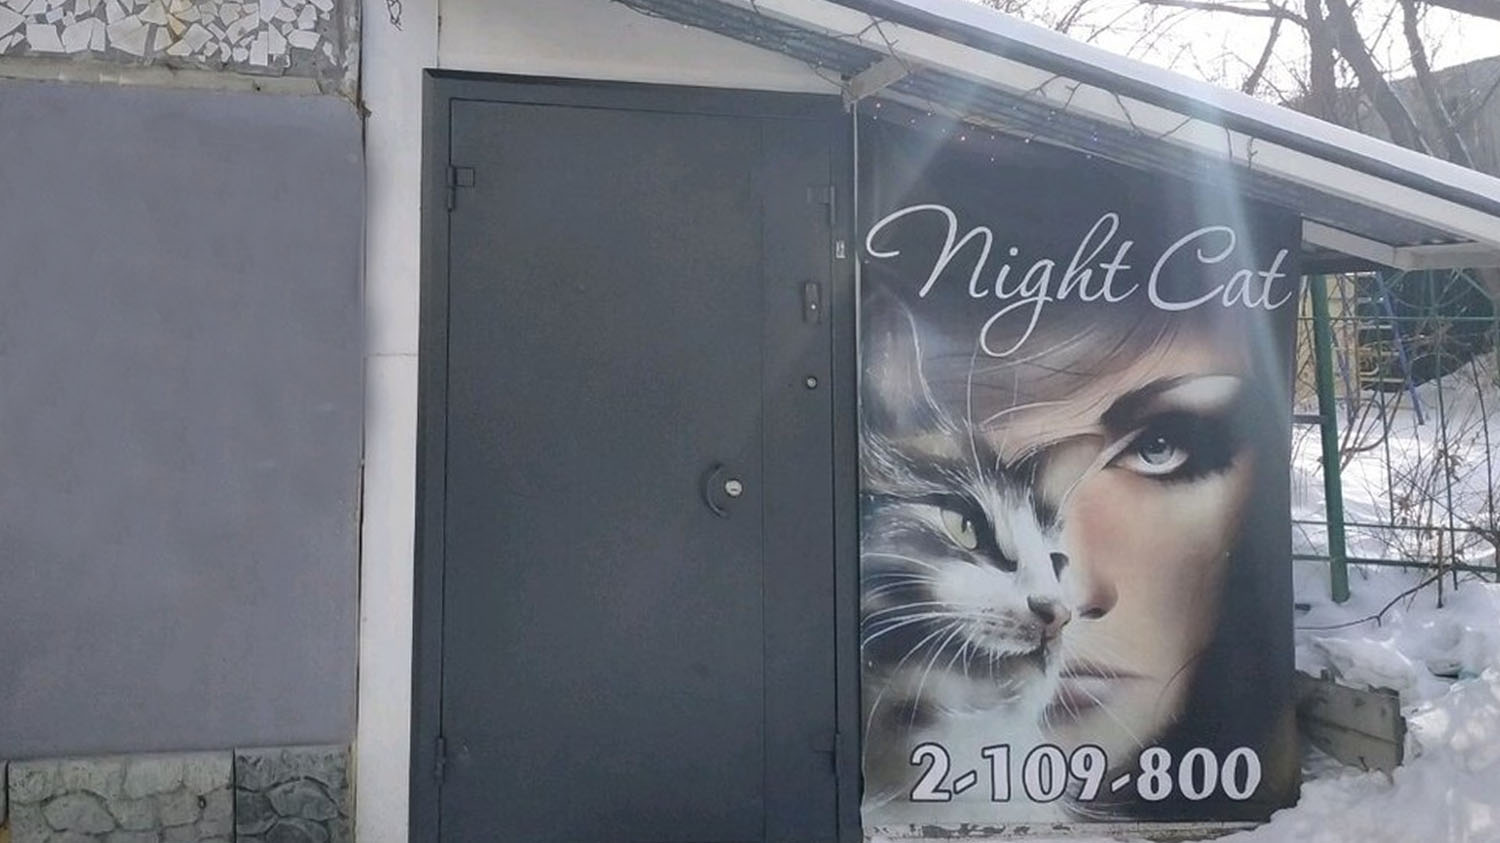 Бордель “Night Cat” ныне “Gold Fox” работает в подвале без документов